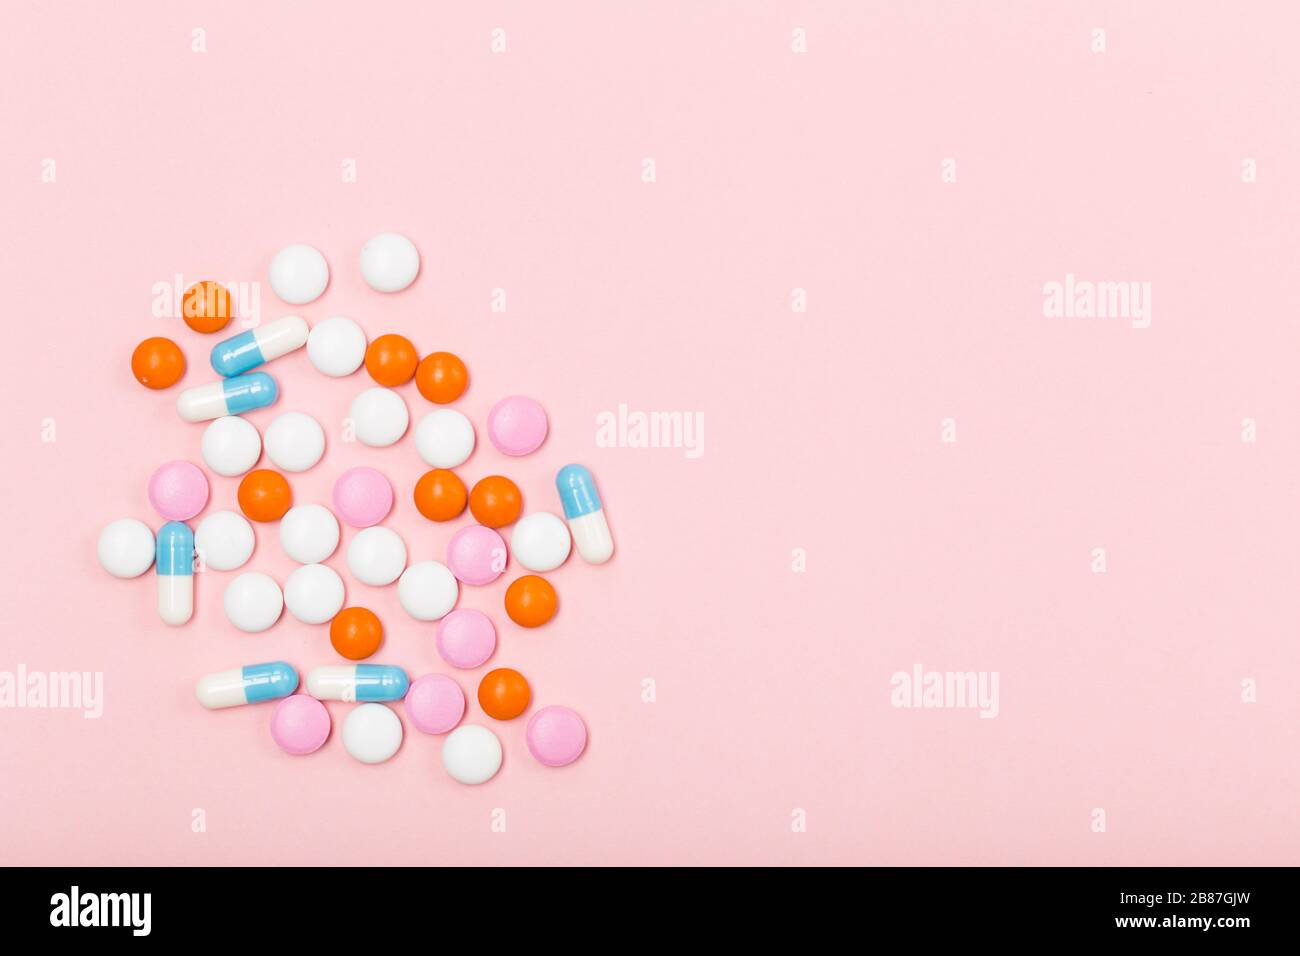 Assortiment de pilules, comprimés et capsules de médecine pharmaceutique sur fond rose. Espace libre. Concept de santé. Banque D'Images